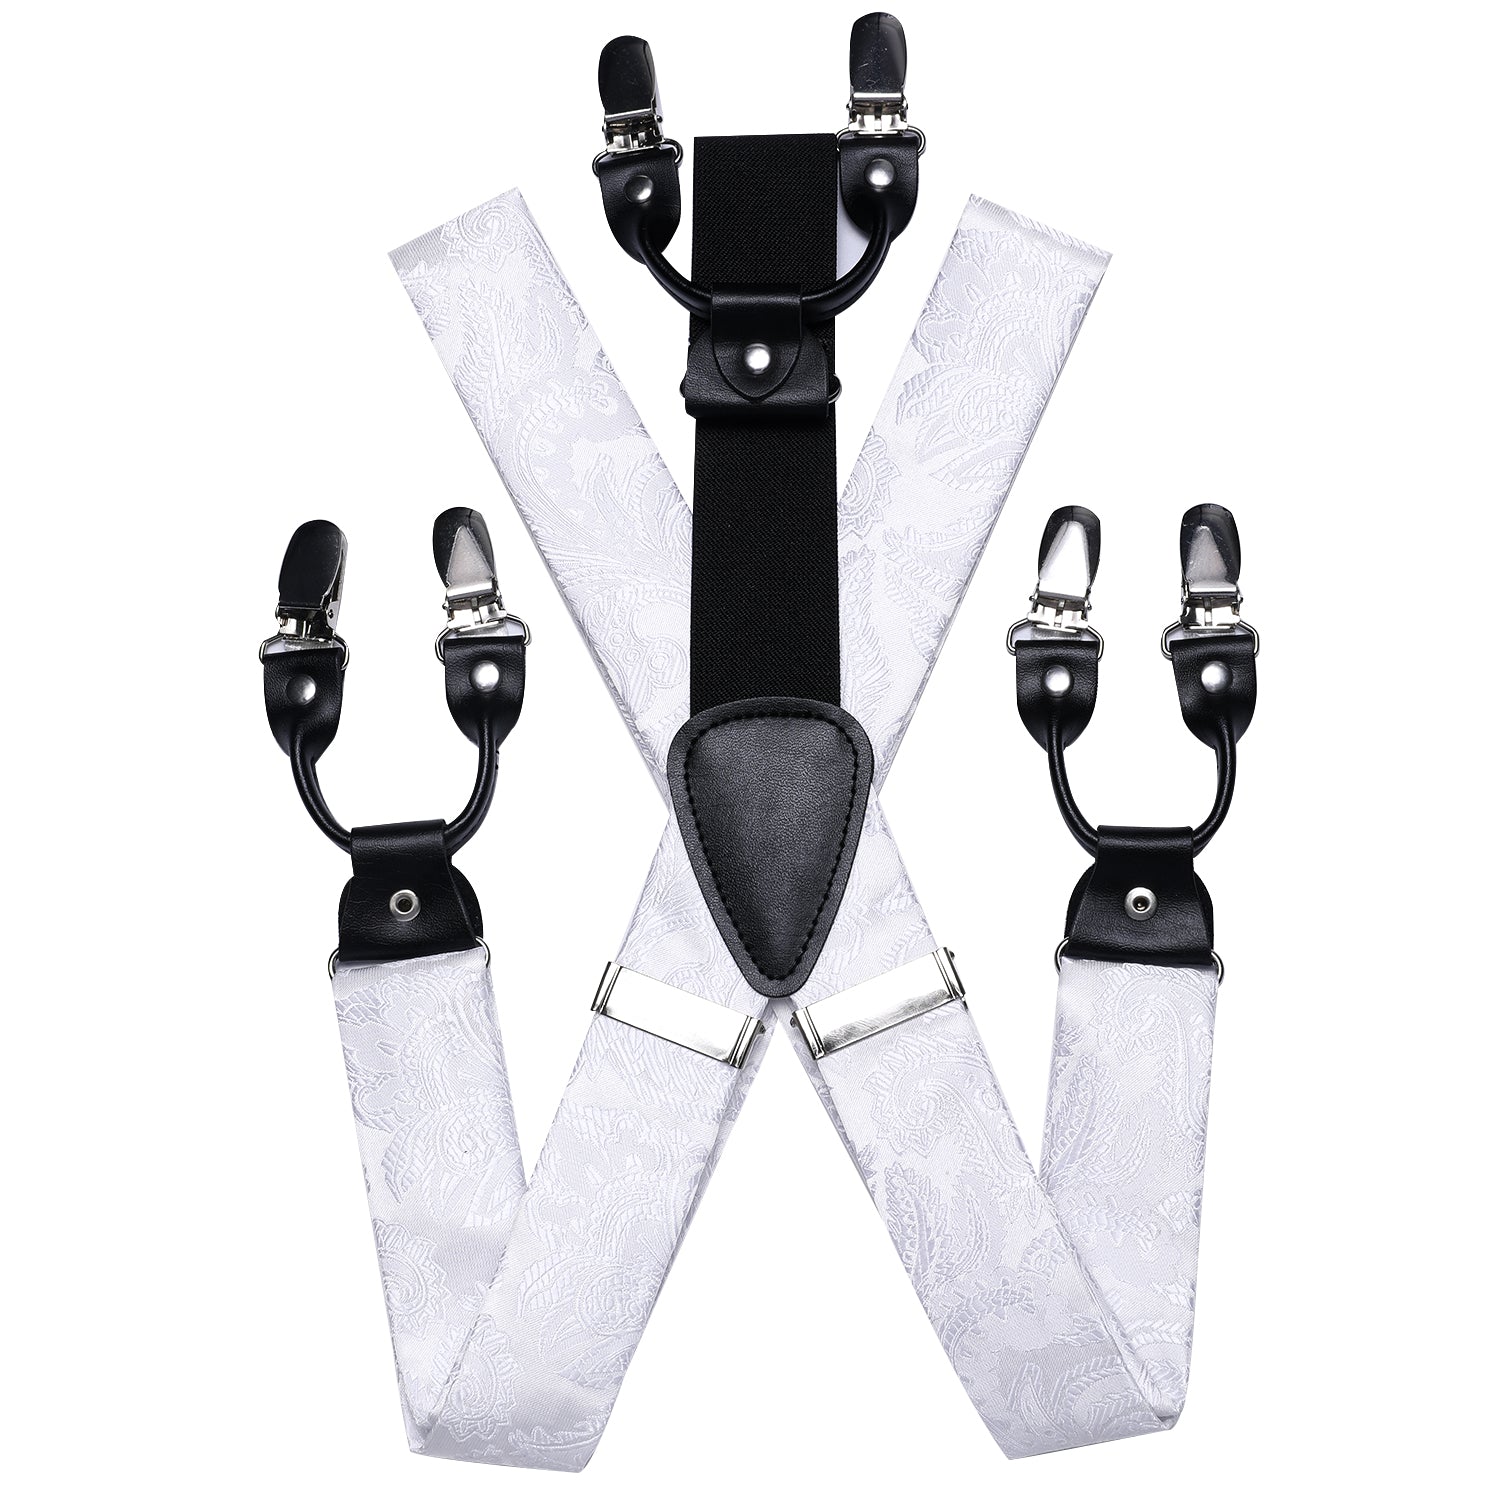 Luxury White Paisley Suspender Bowtie Pocket Square Cufflinks Set